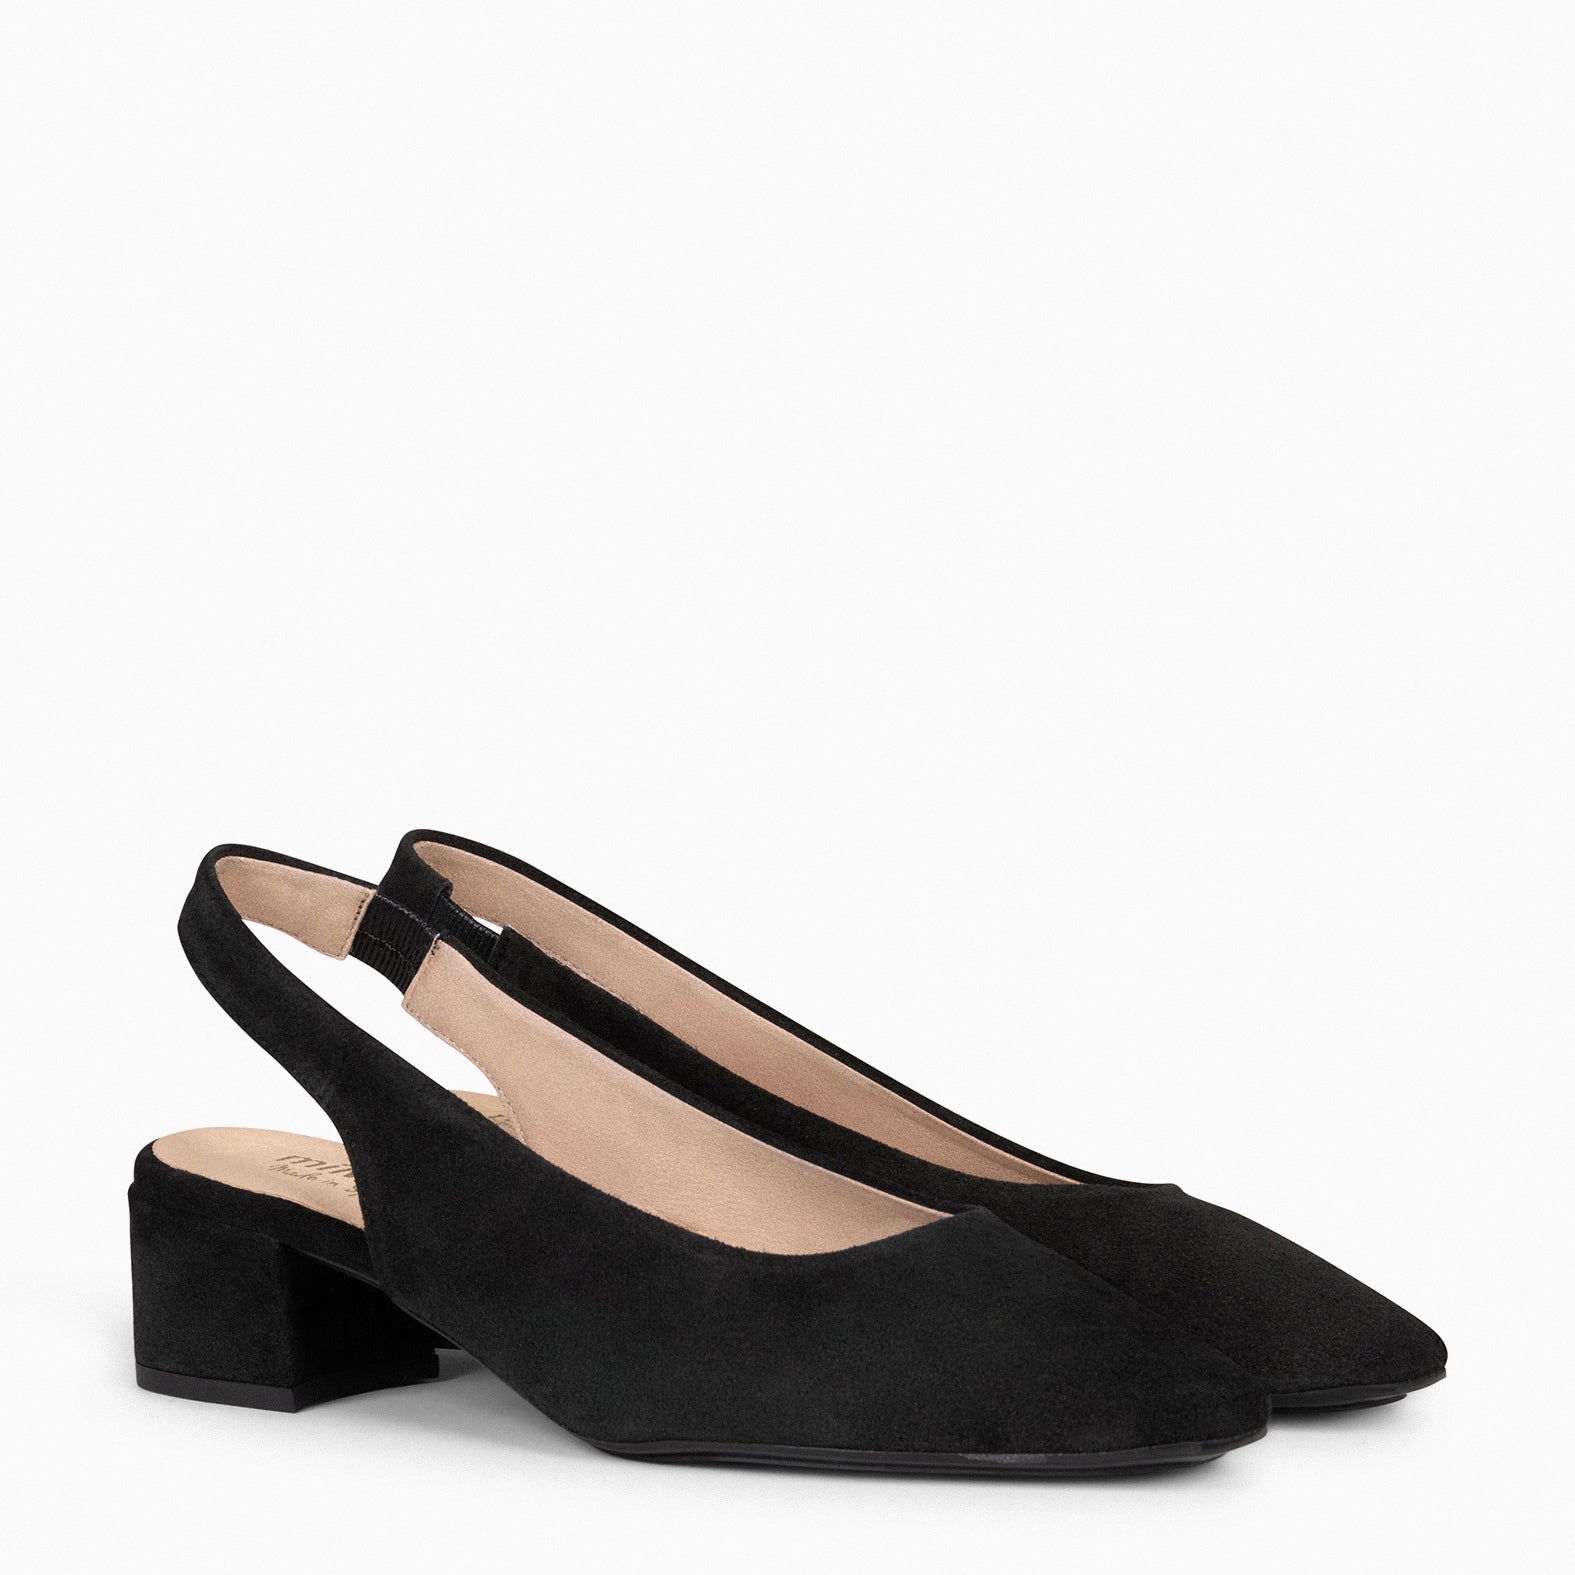 URBAN LADY – BLACK slingback mid heels